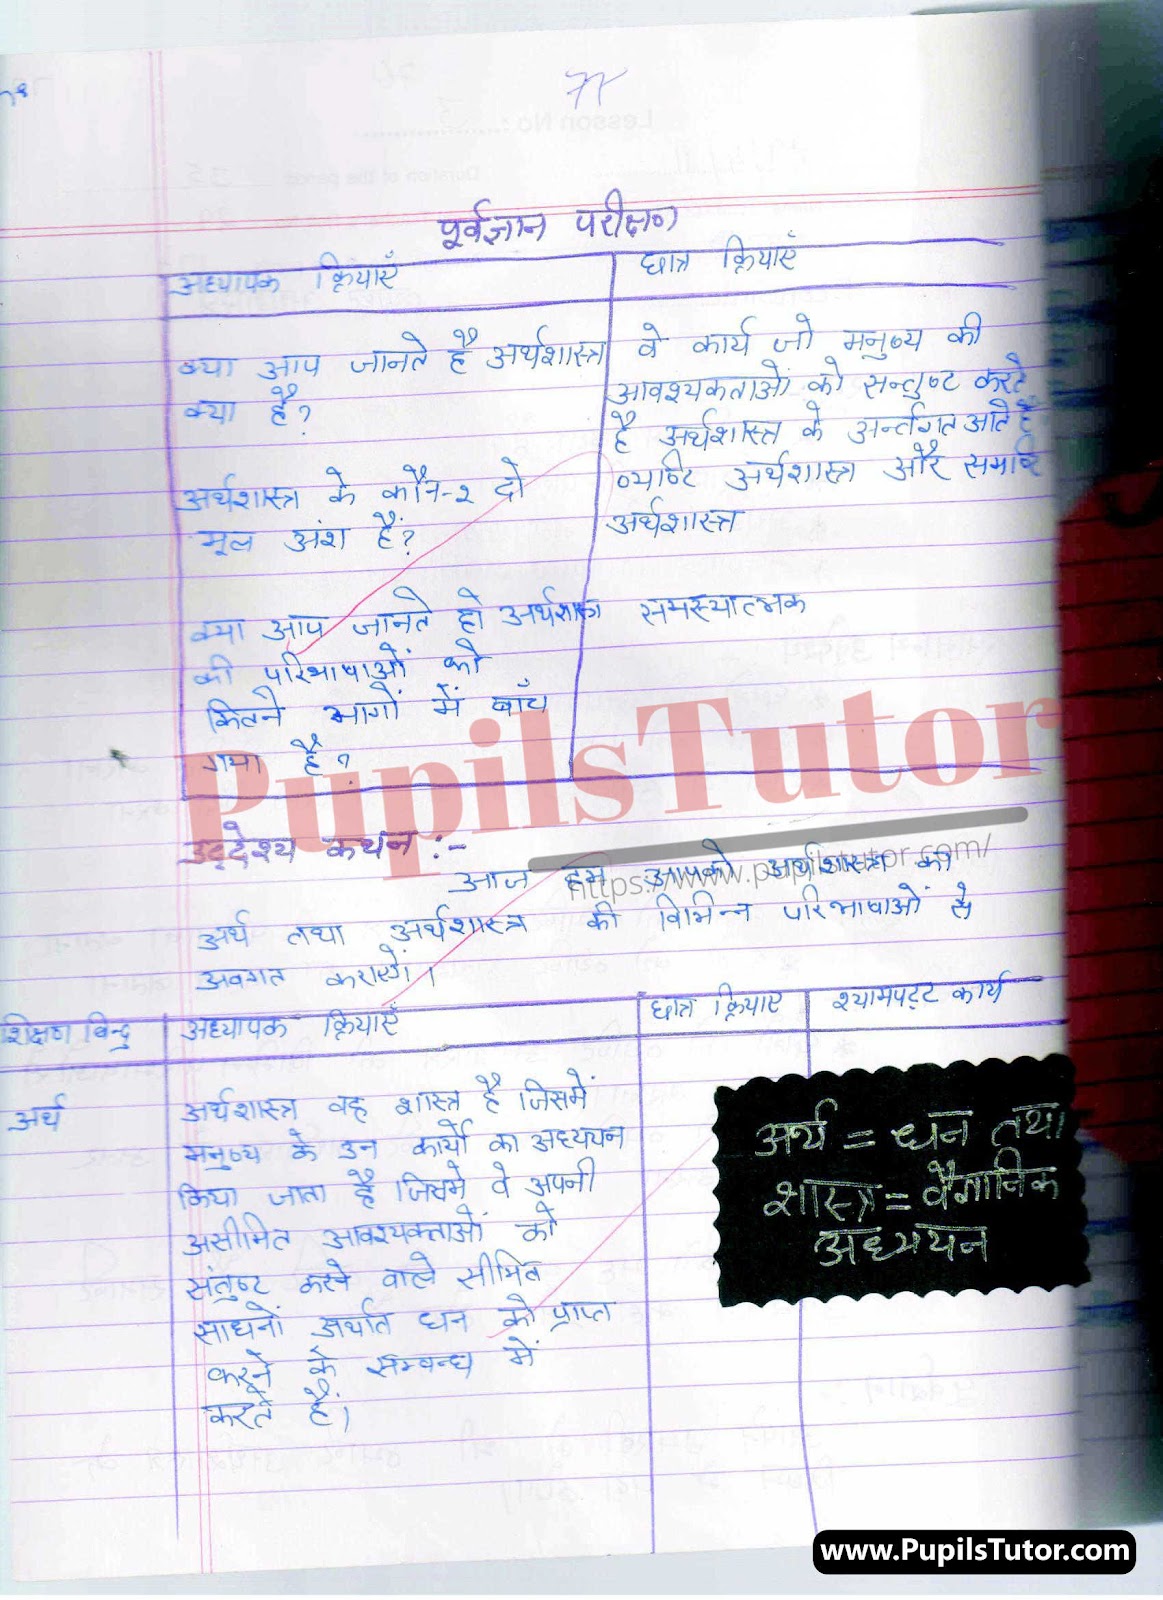 Real School Teaching And Practice Skill Arthashastra Lesson Plan For B.Ed And Deled In Hindi Free Download PDF And PPT (Power Point Presentation And Slides) | बीएड और डीएलएड के लिए वास्तविक स्कूल शिक्षण और अभ्यास कौशल पर अर्थशास्त्र कक्षा 9 से 12 के लेसन प्लान की पीडीऍफ़ और पीपीटी फ्री में डाउनलोड करे| – (Page And PDF Number 2) – pupilstutor